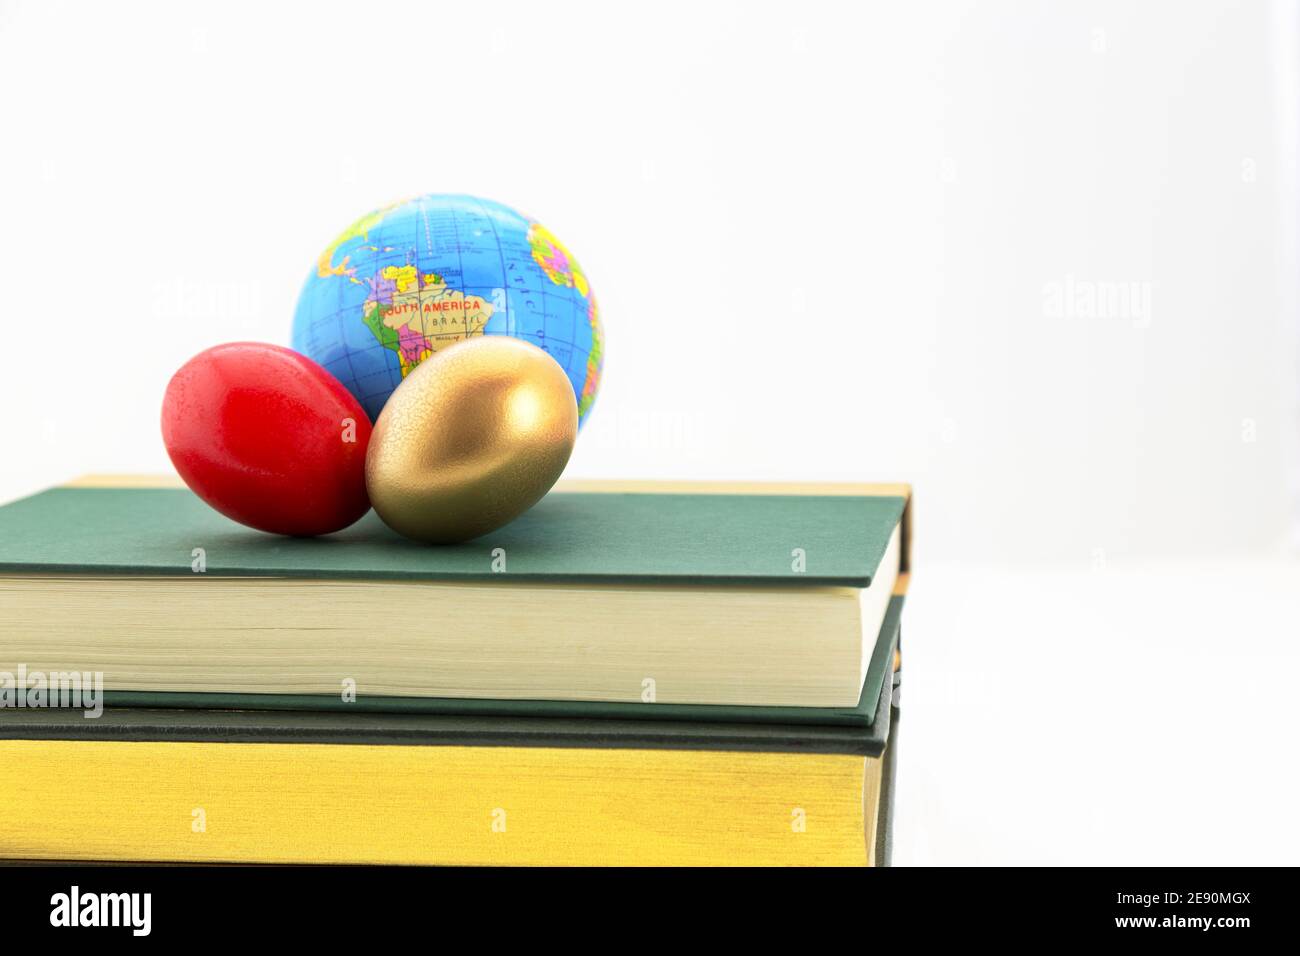 El huevo de oro, el huevo rojo y el globo en los libros son conceptos de los riesgos y beneficios empresariales de la industria mundial, retos y estrategias de éxito. Foto de stock